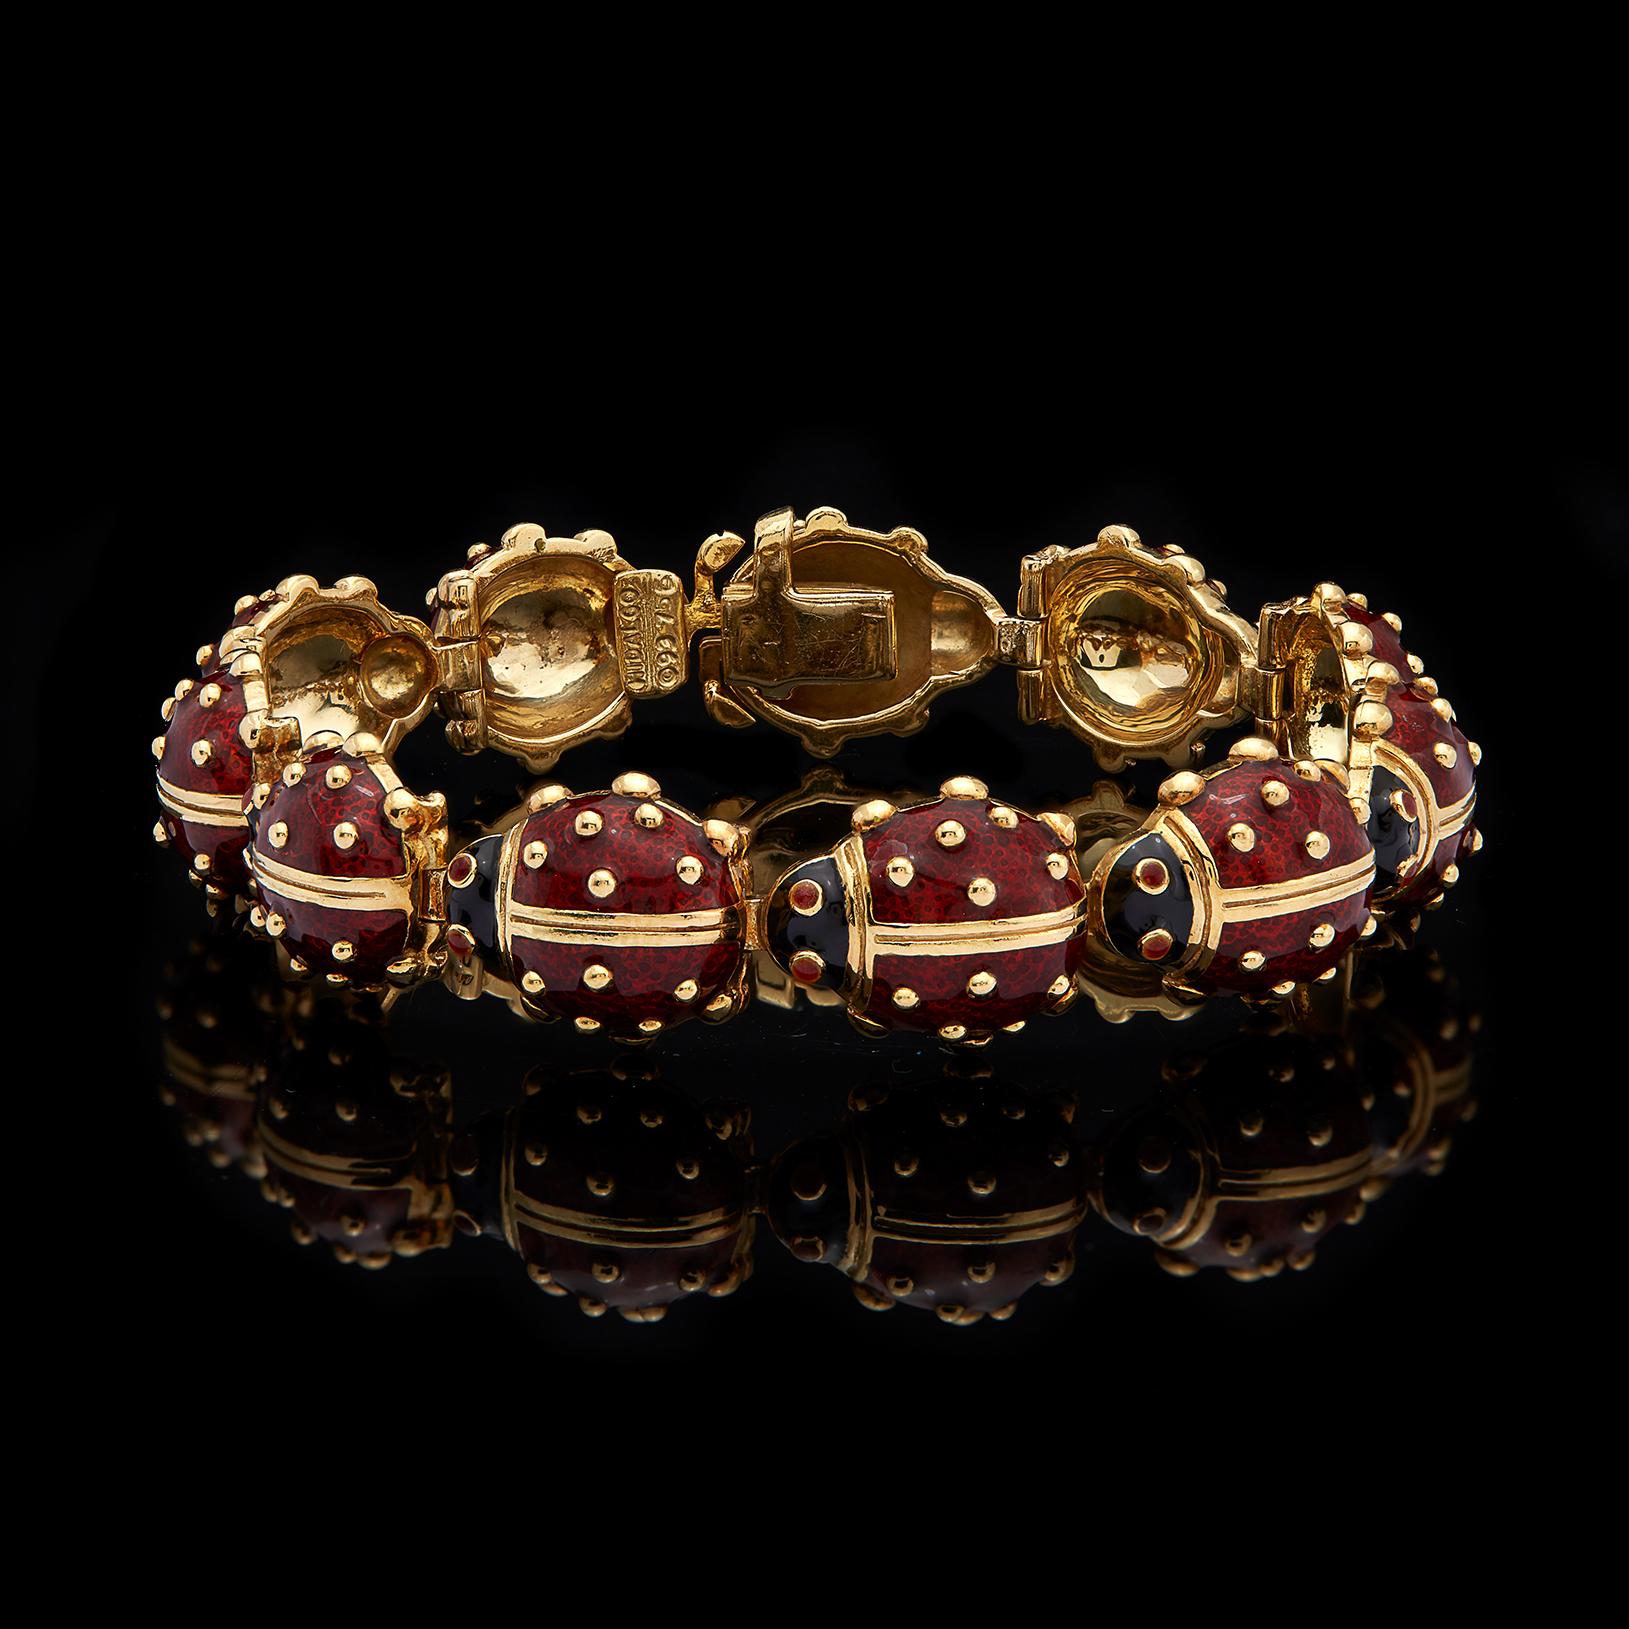 ladybug bracelet gold